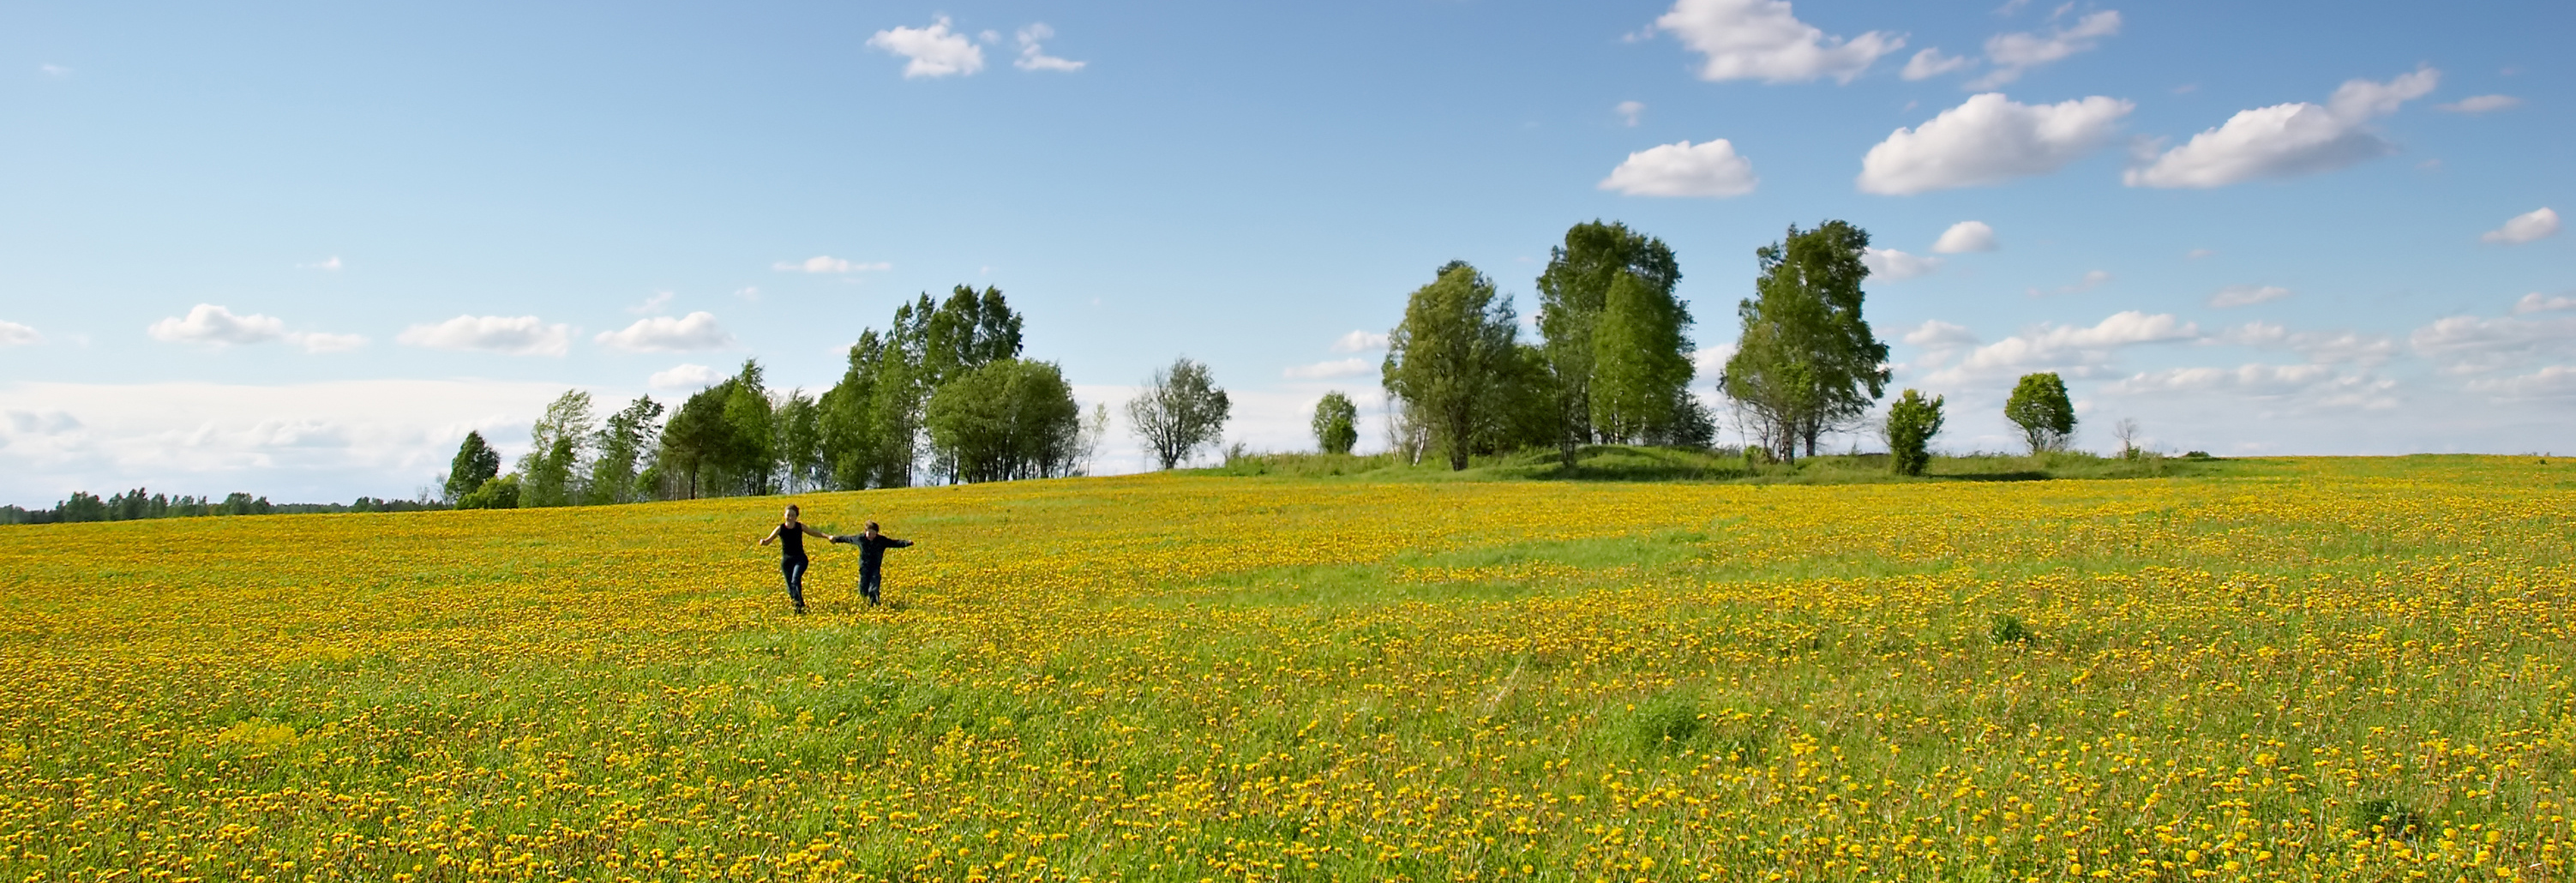 Personen laufen über eine grüne Wiese
					©AdobeStock_798386kleiner_Oleg Kozlov
				